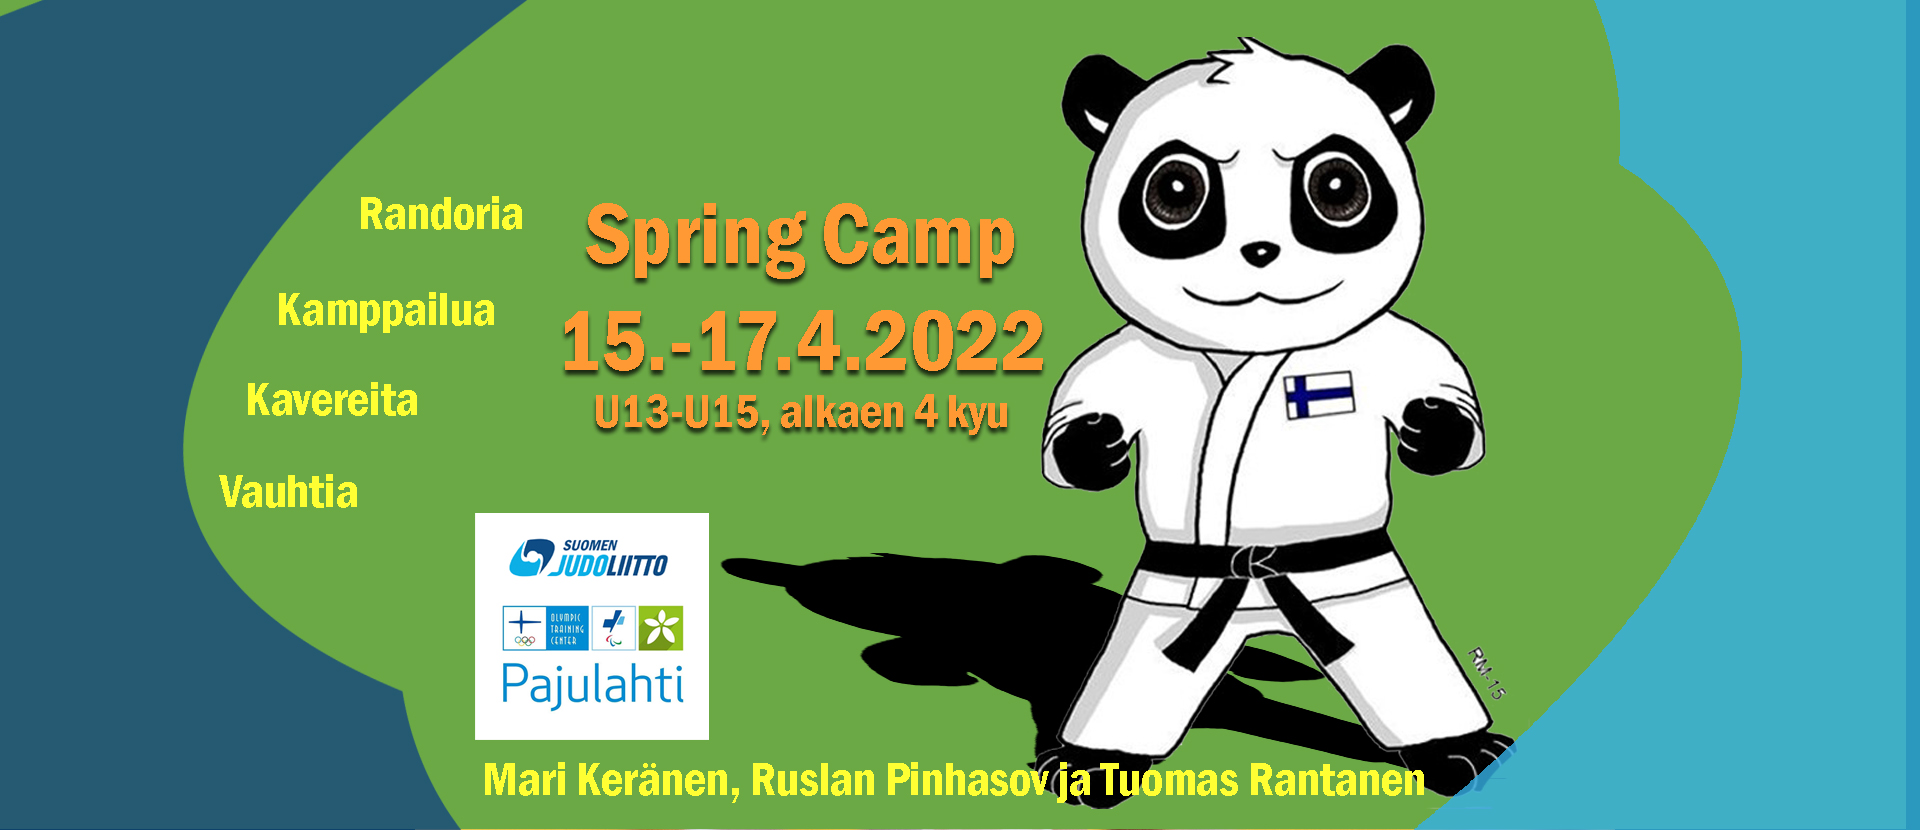 Judon Spring Camp Pajulahdessa